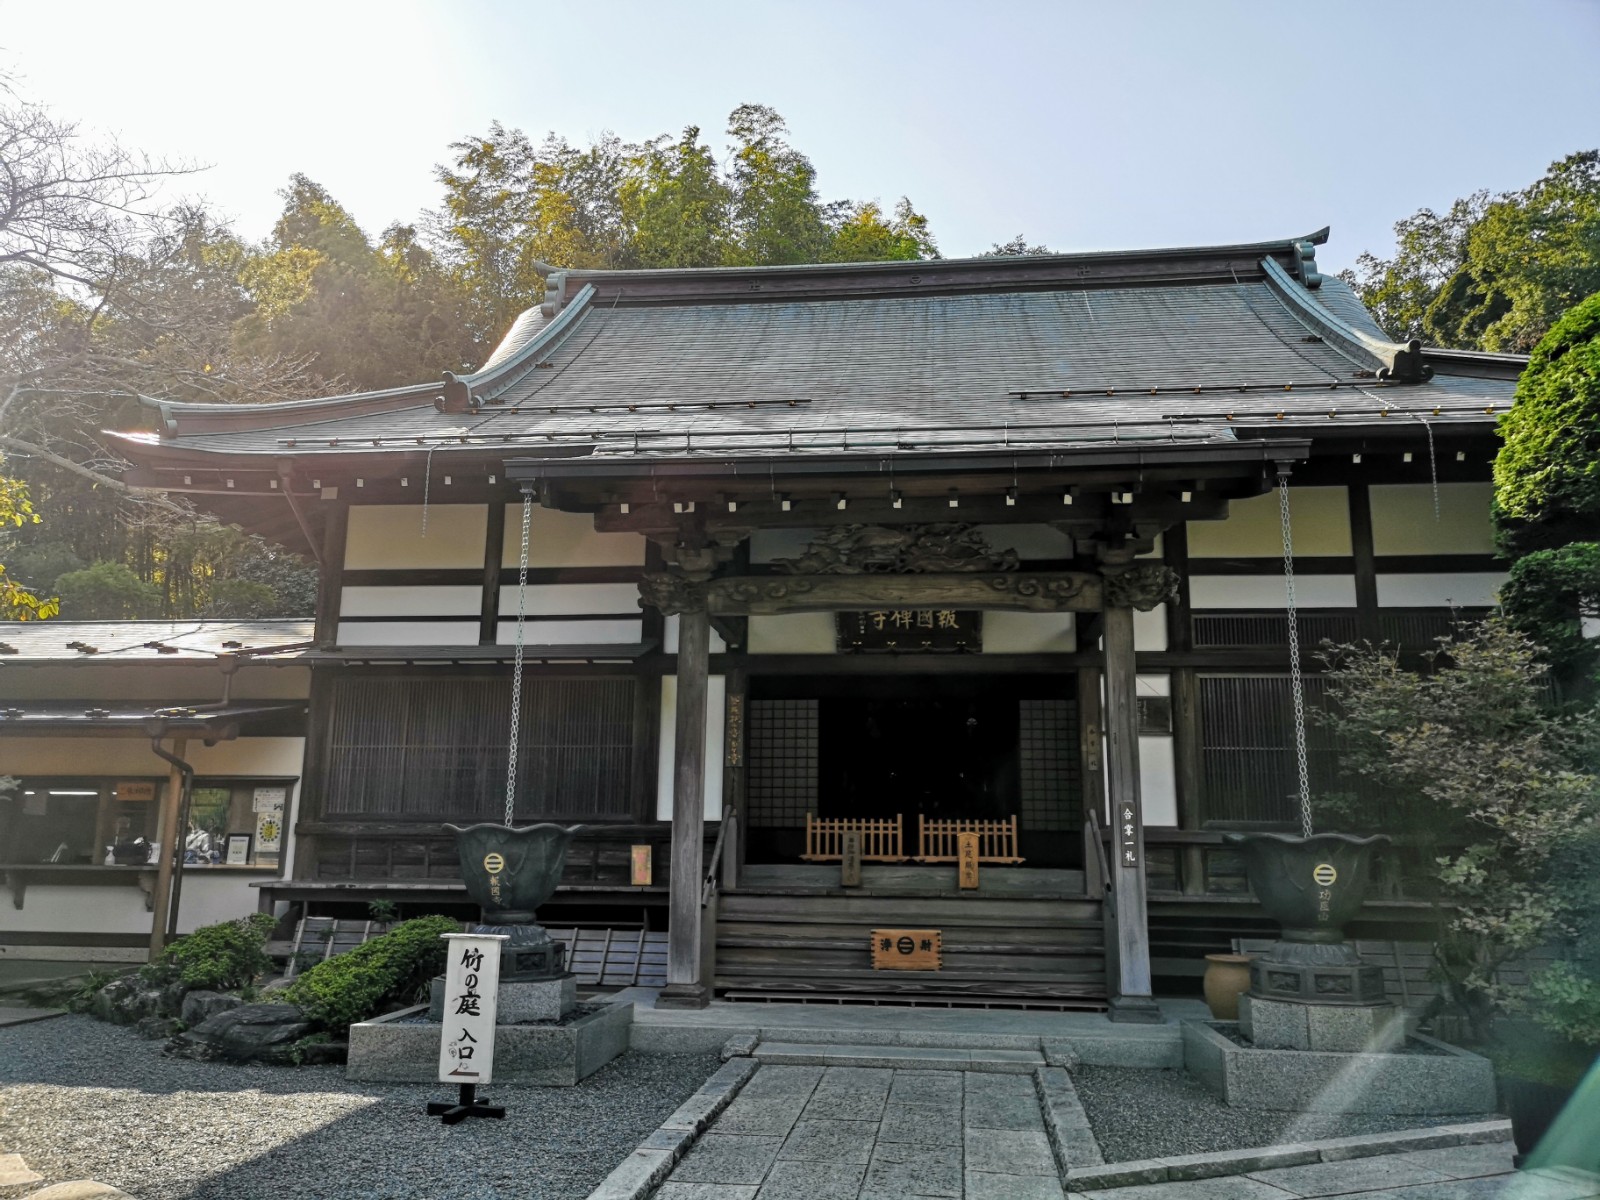 報国寺 鎌倉市観光協会 時を楽しむ 旅がある 鎌倉観光公式ガイド